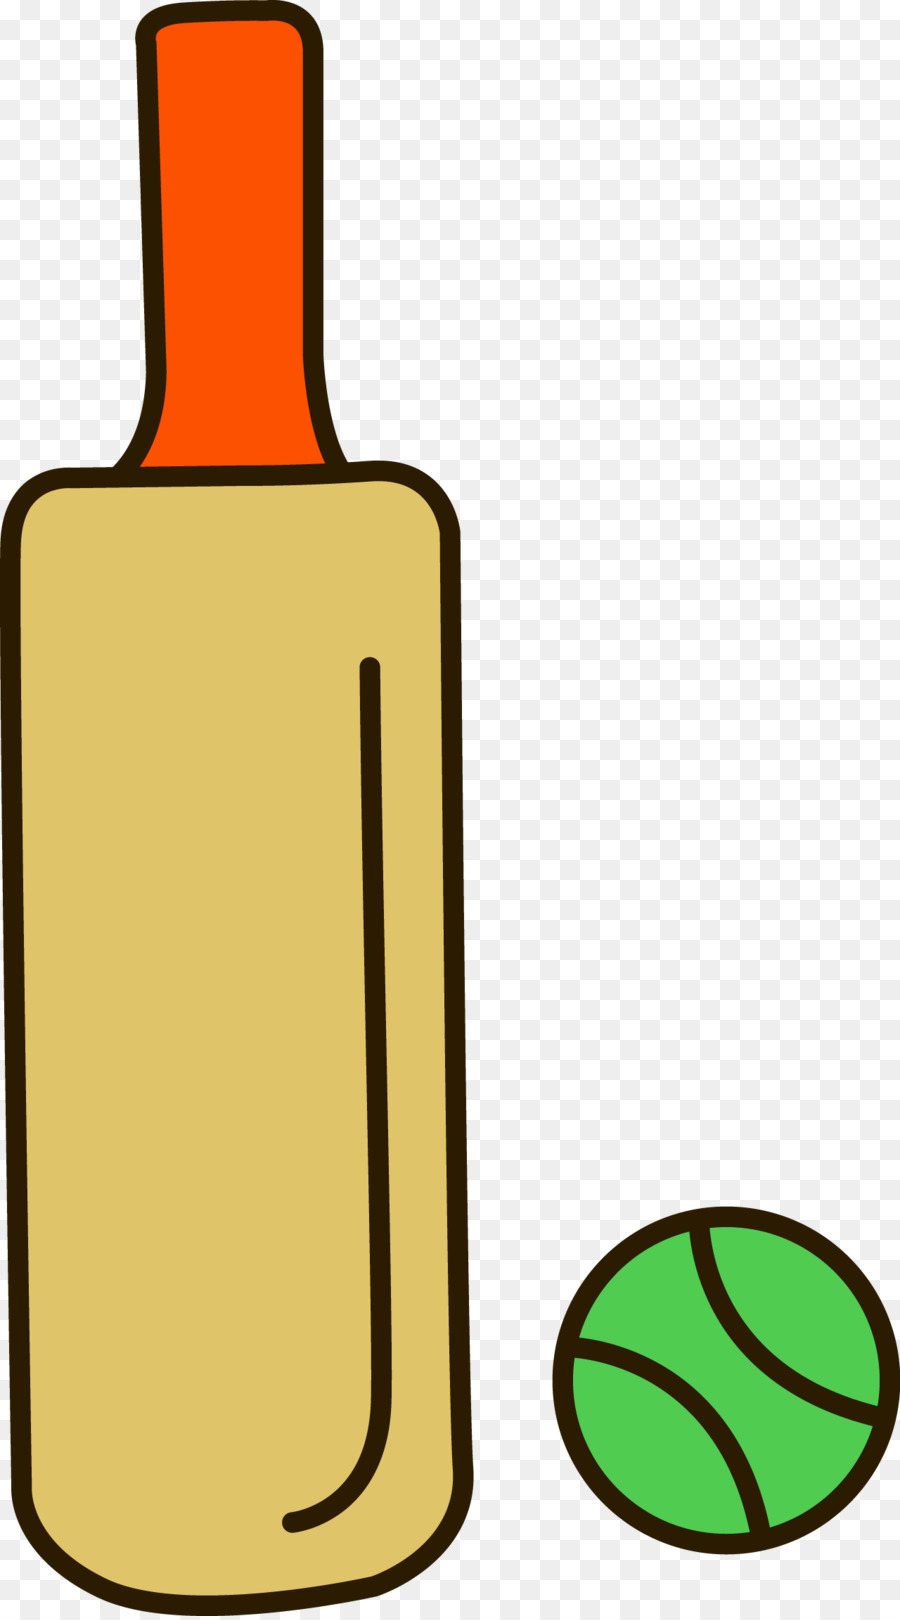 India Cricket Simbolo di Clip art - India